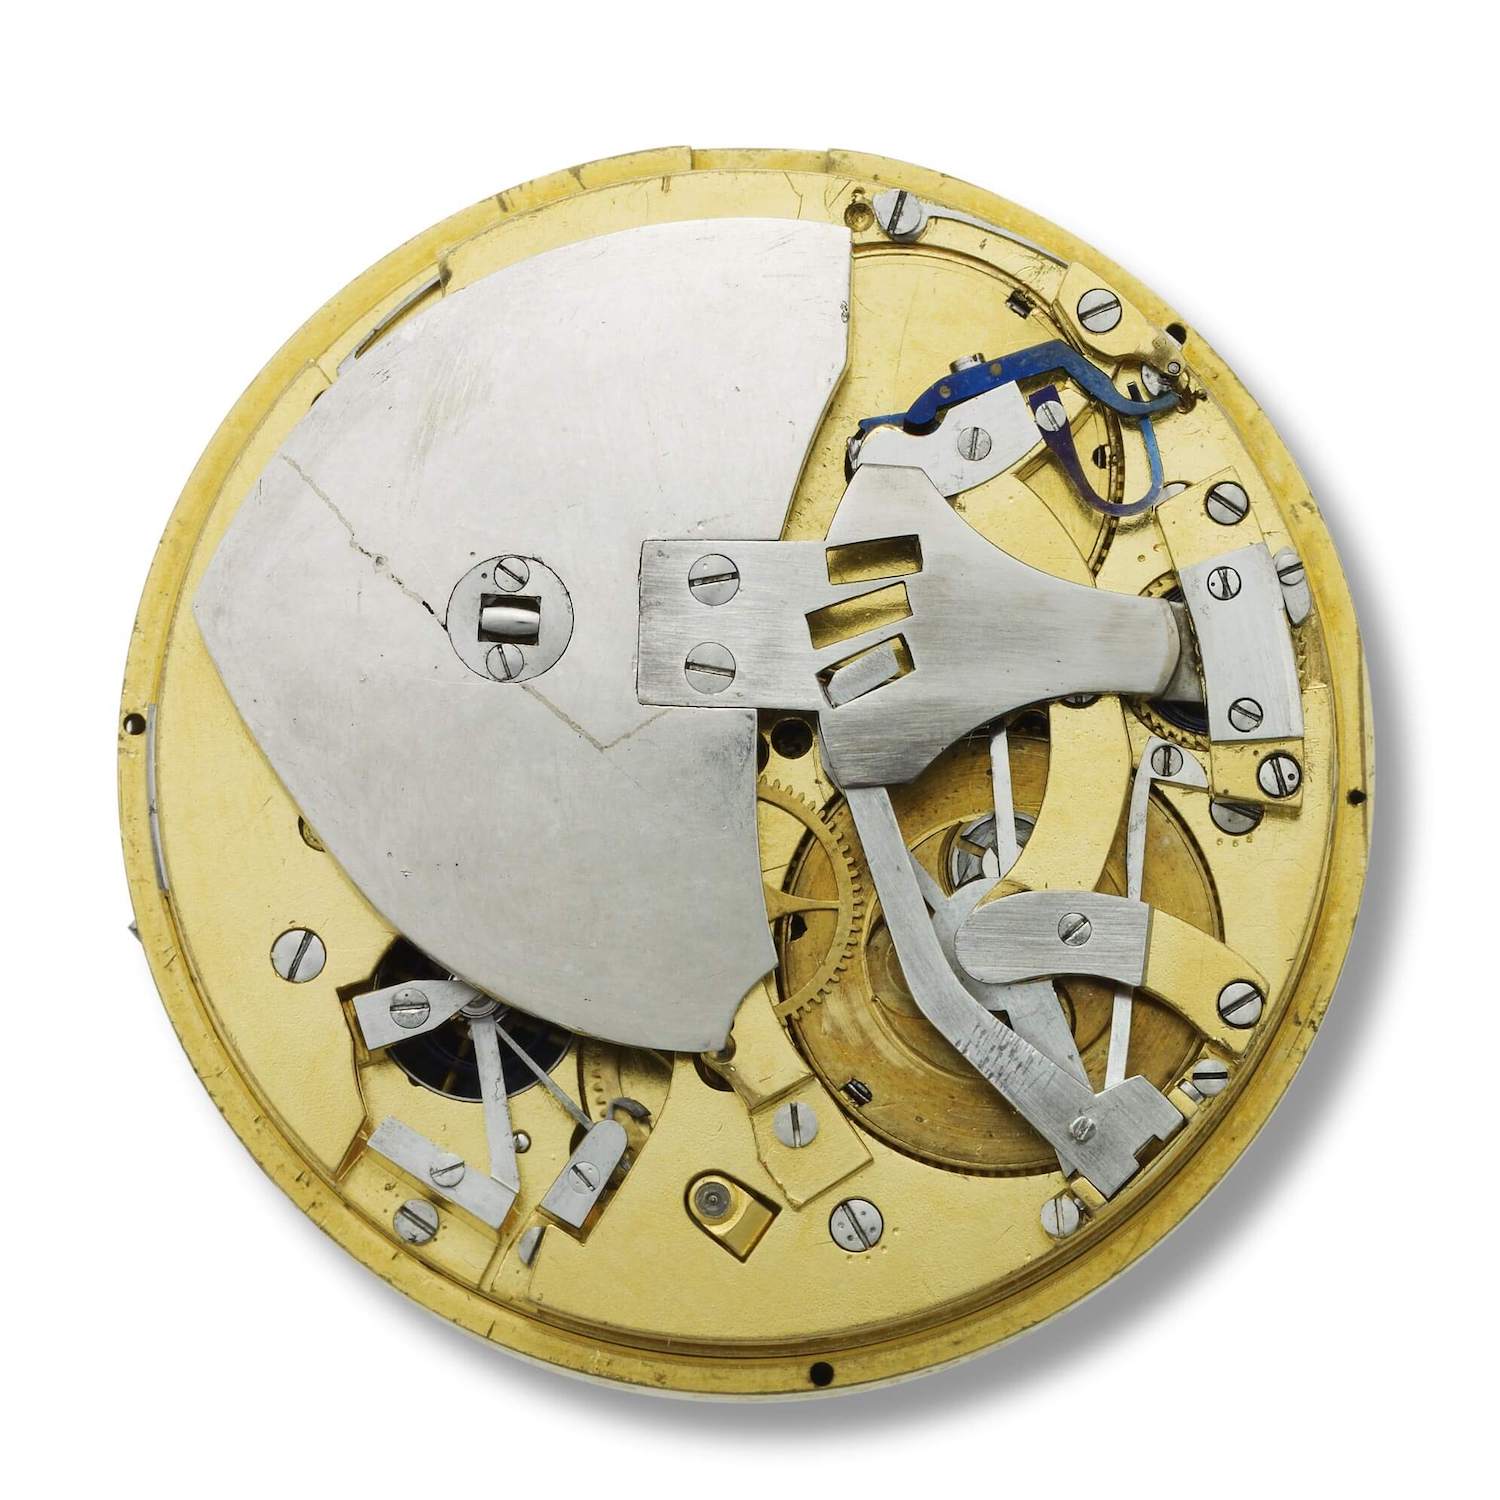 1780 montre perpétuelle by Breguet (image by Breguet)